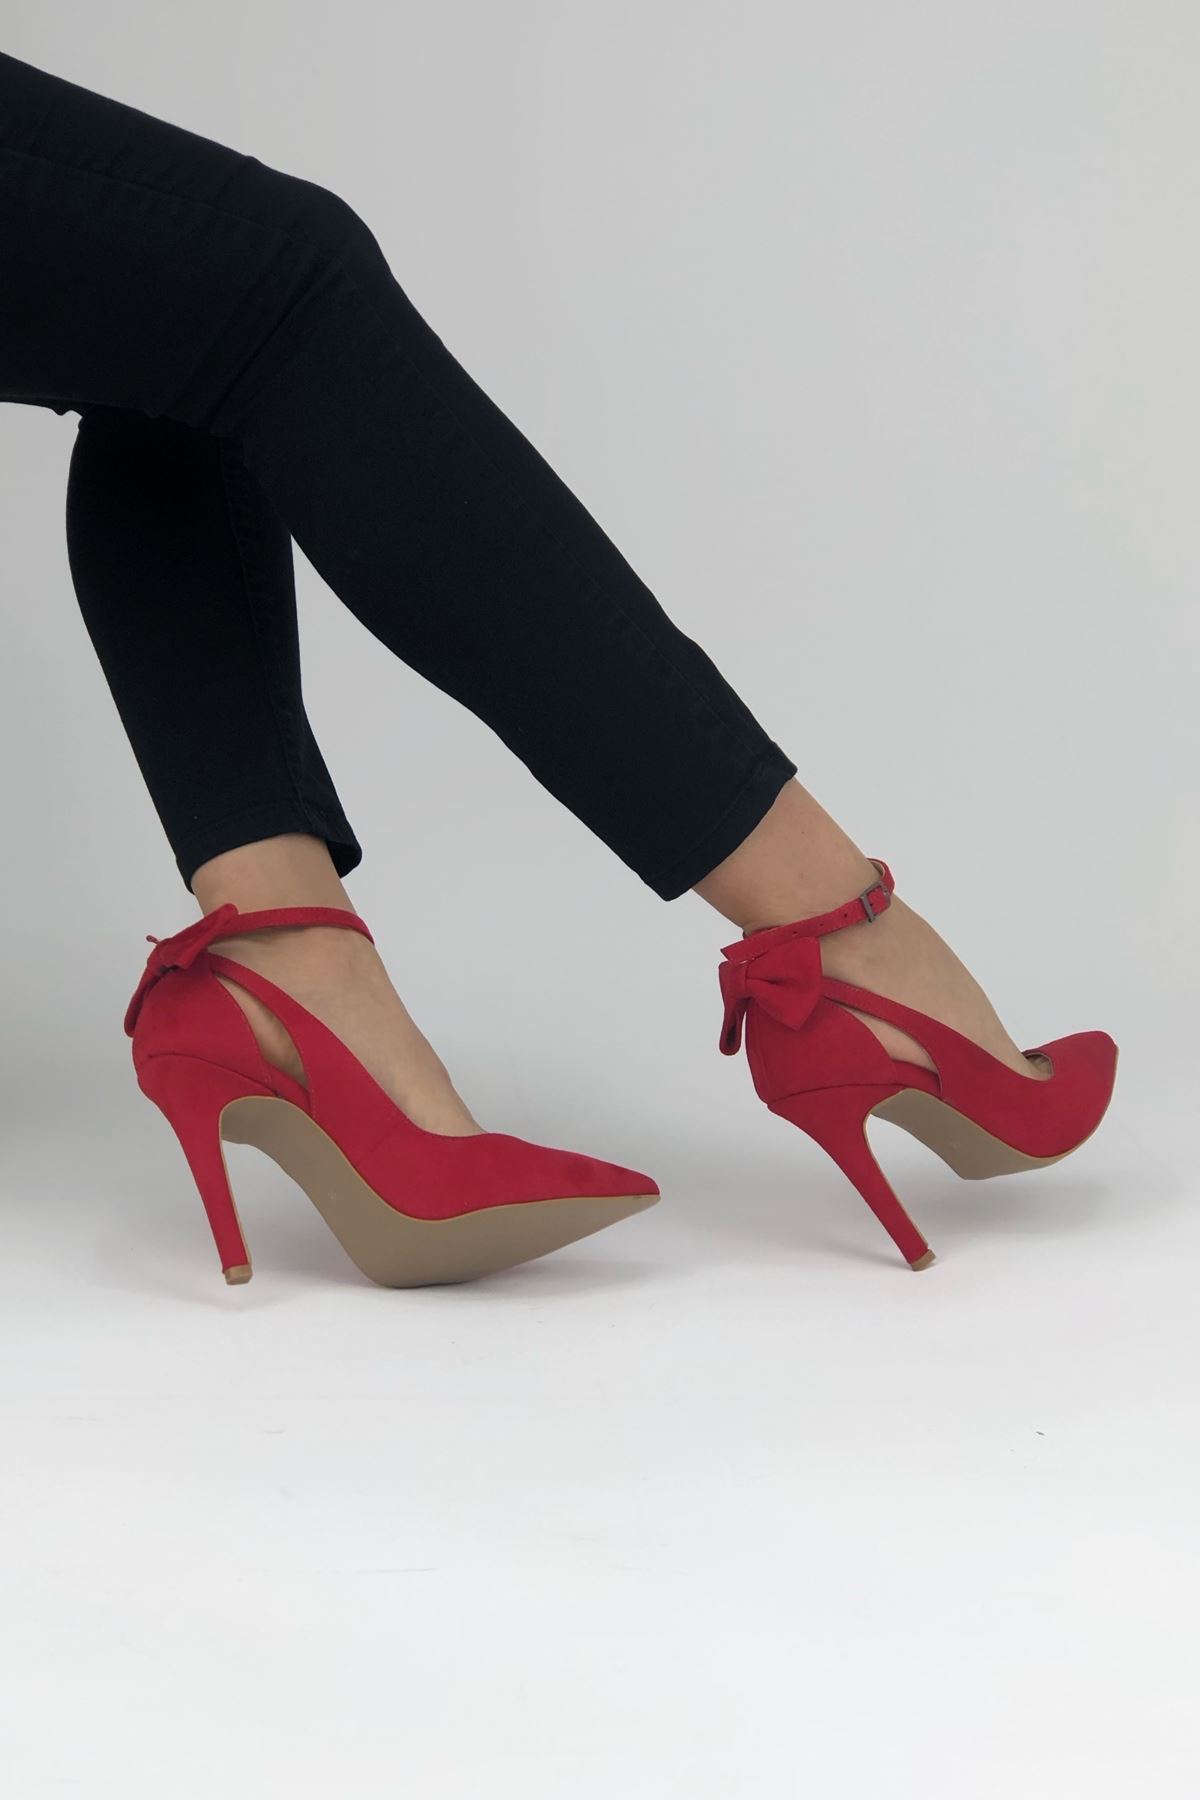 Luther Papyonlu Kırmızı Süet Kadın Ayakkabı